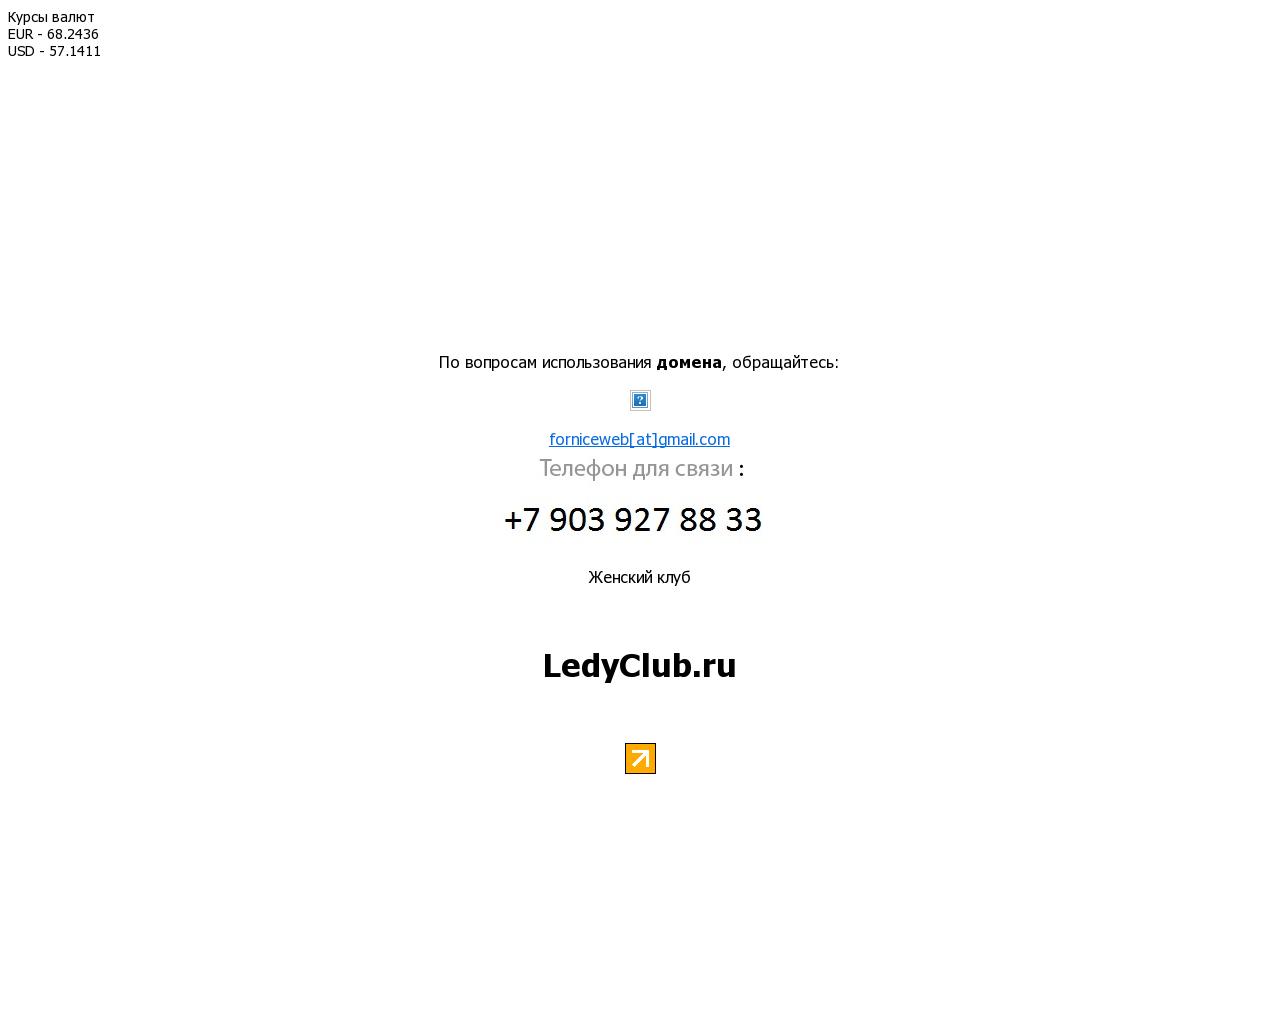 Изображение сайта ledyclub.ru в разрешении 1280x1024